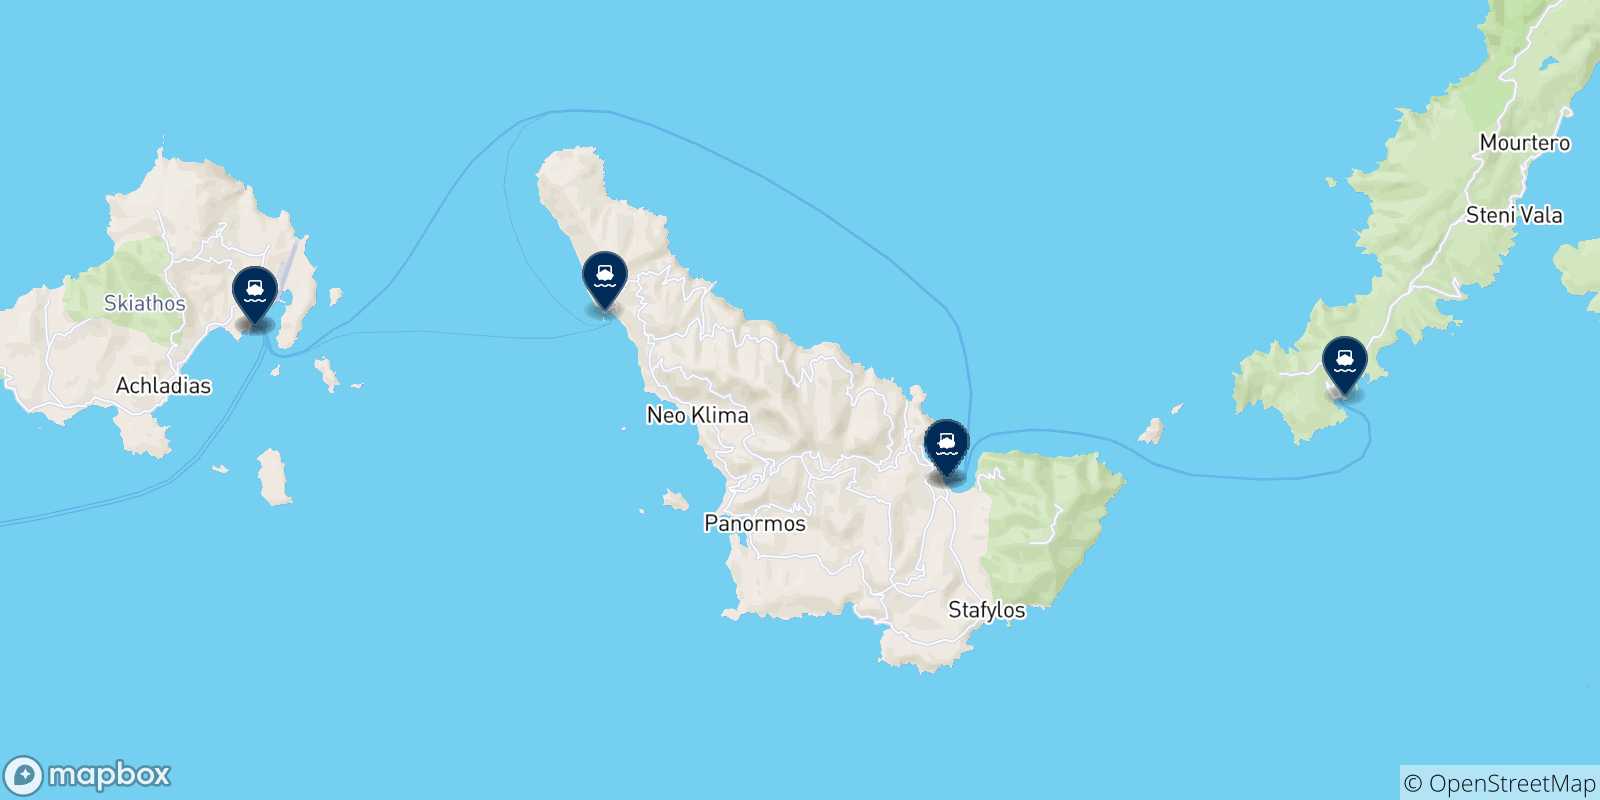 Mappa delle possibili rotte tra Skiathos e le Isole Sporadi